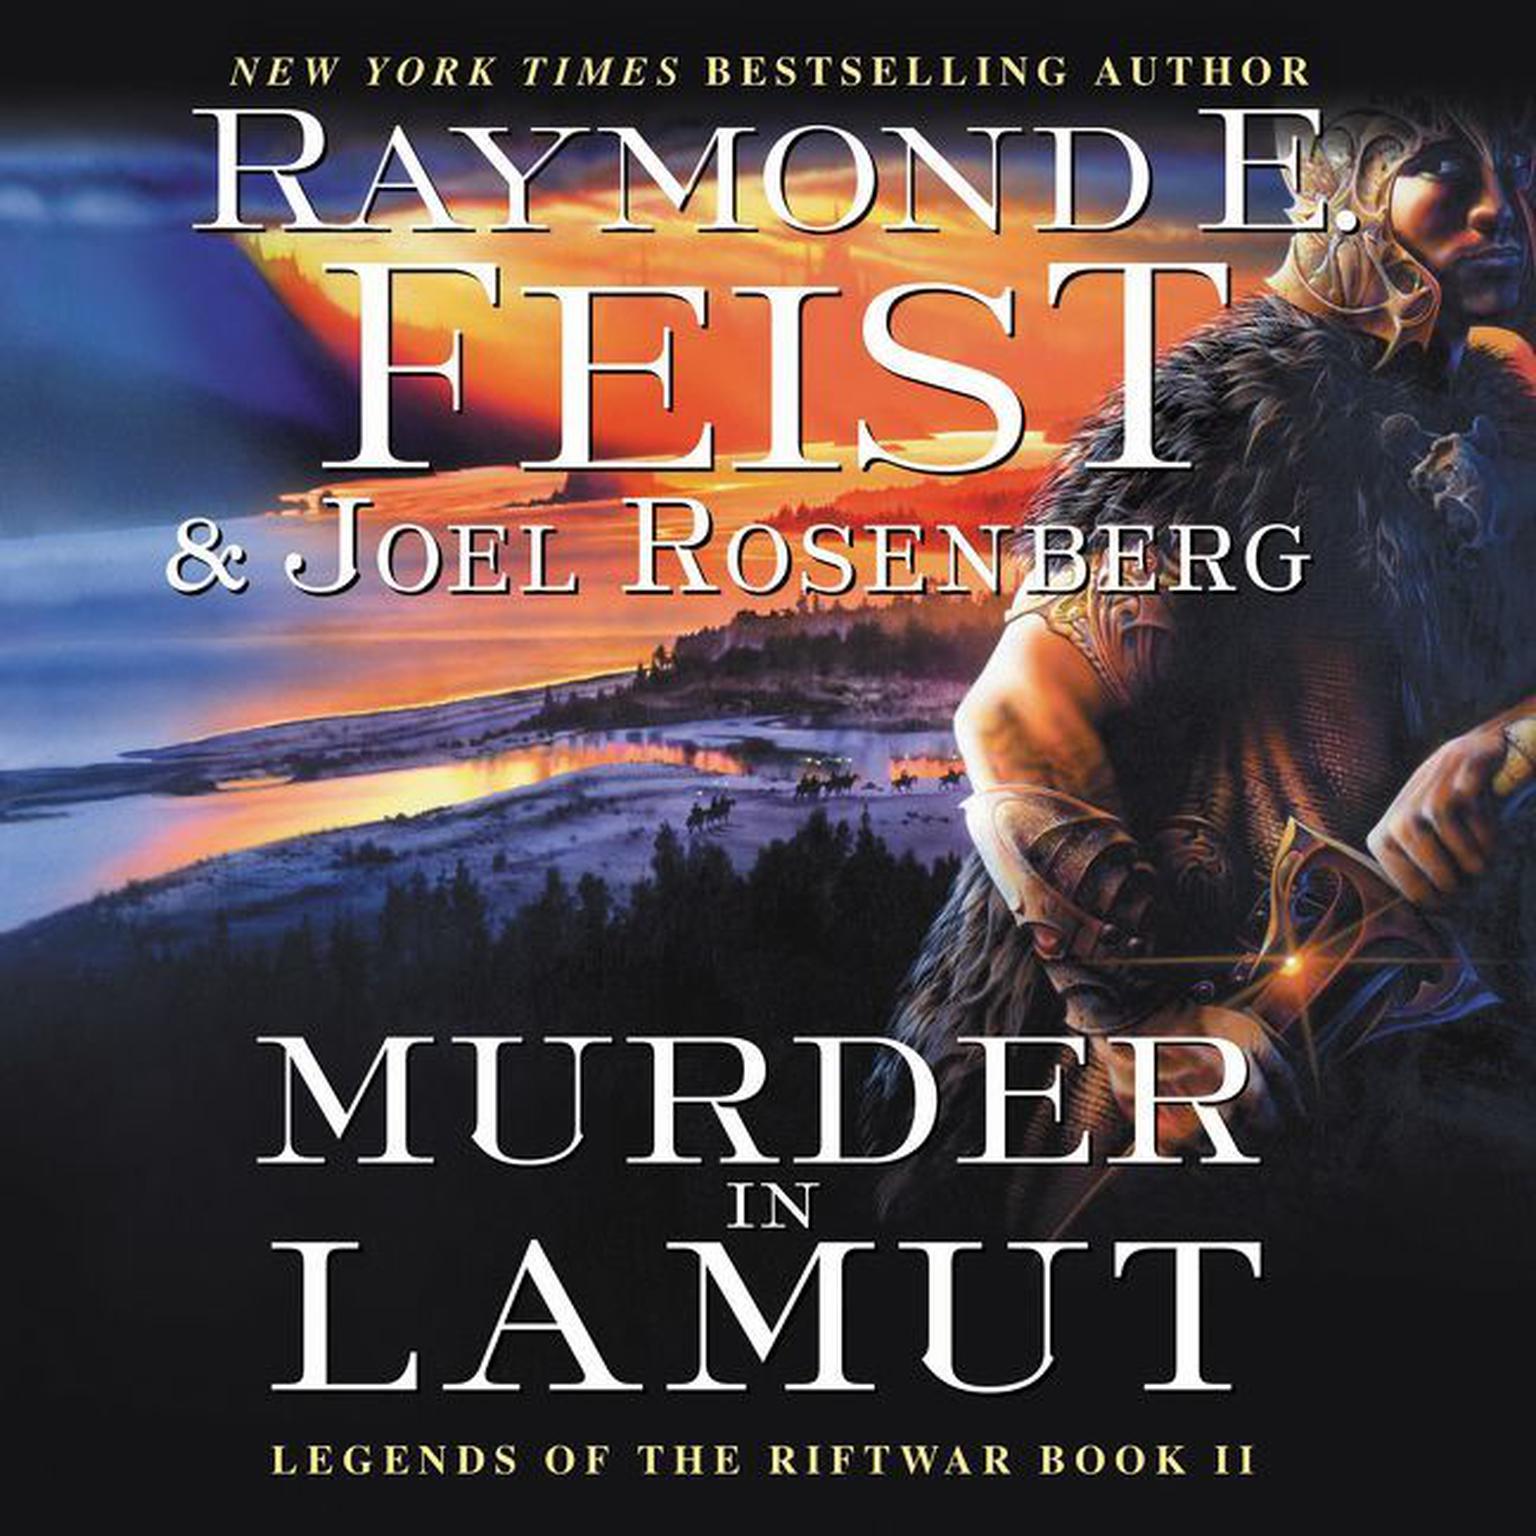 Murder in LaMut: Legends of the Riftwar, Book II Audiobook, by Raymond E. Feist